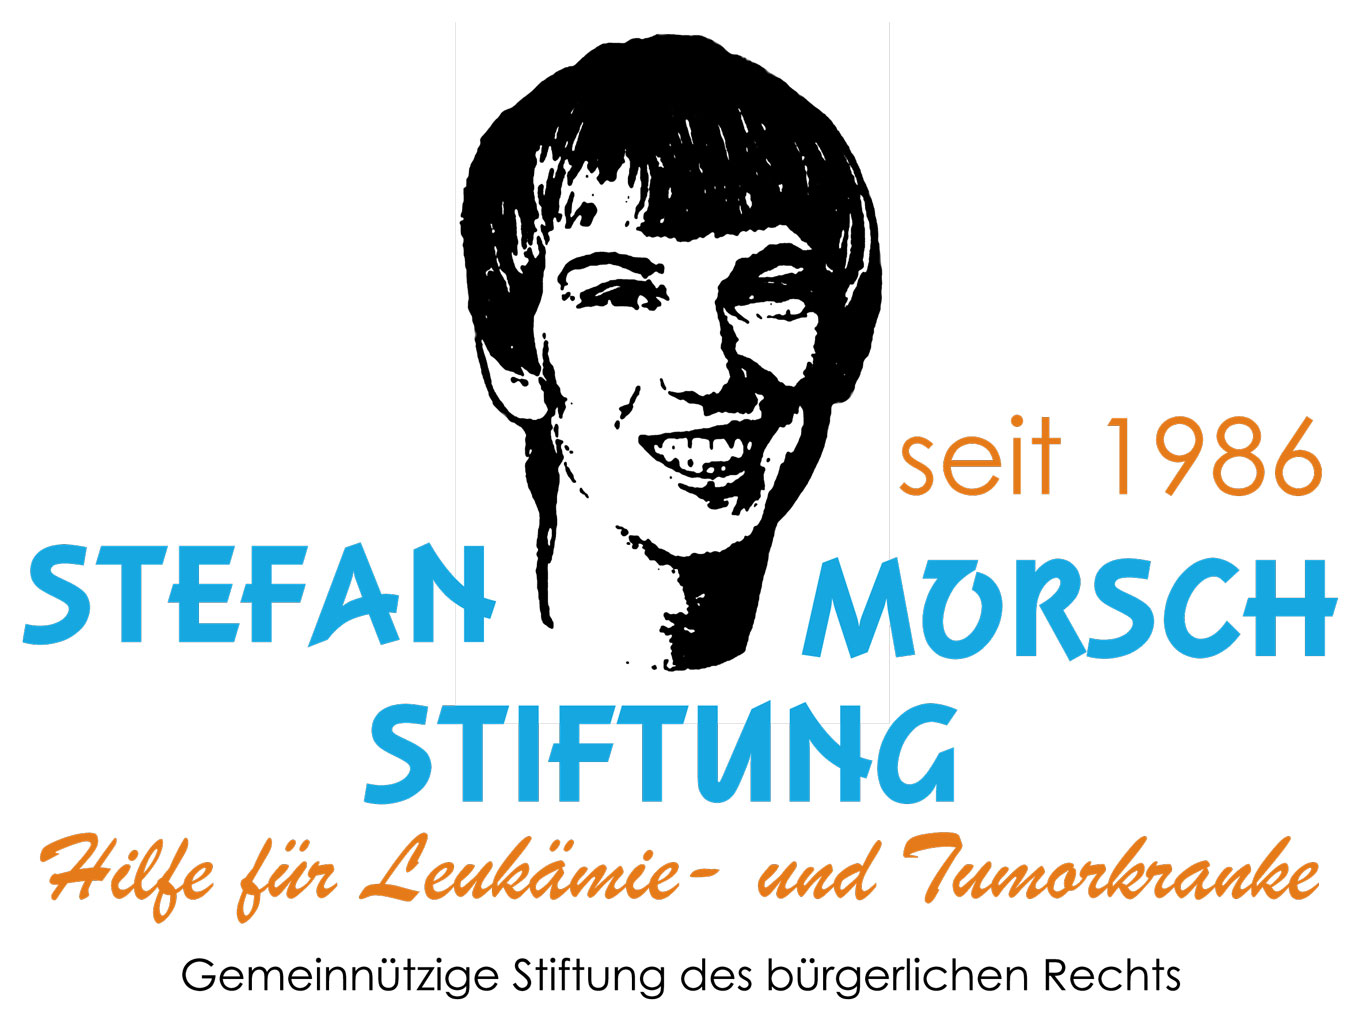 Stefan Morsch Stiftung